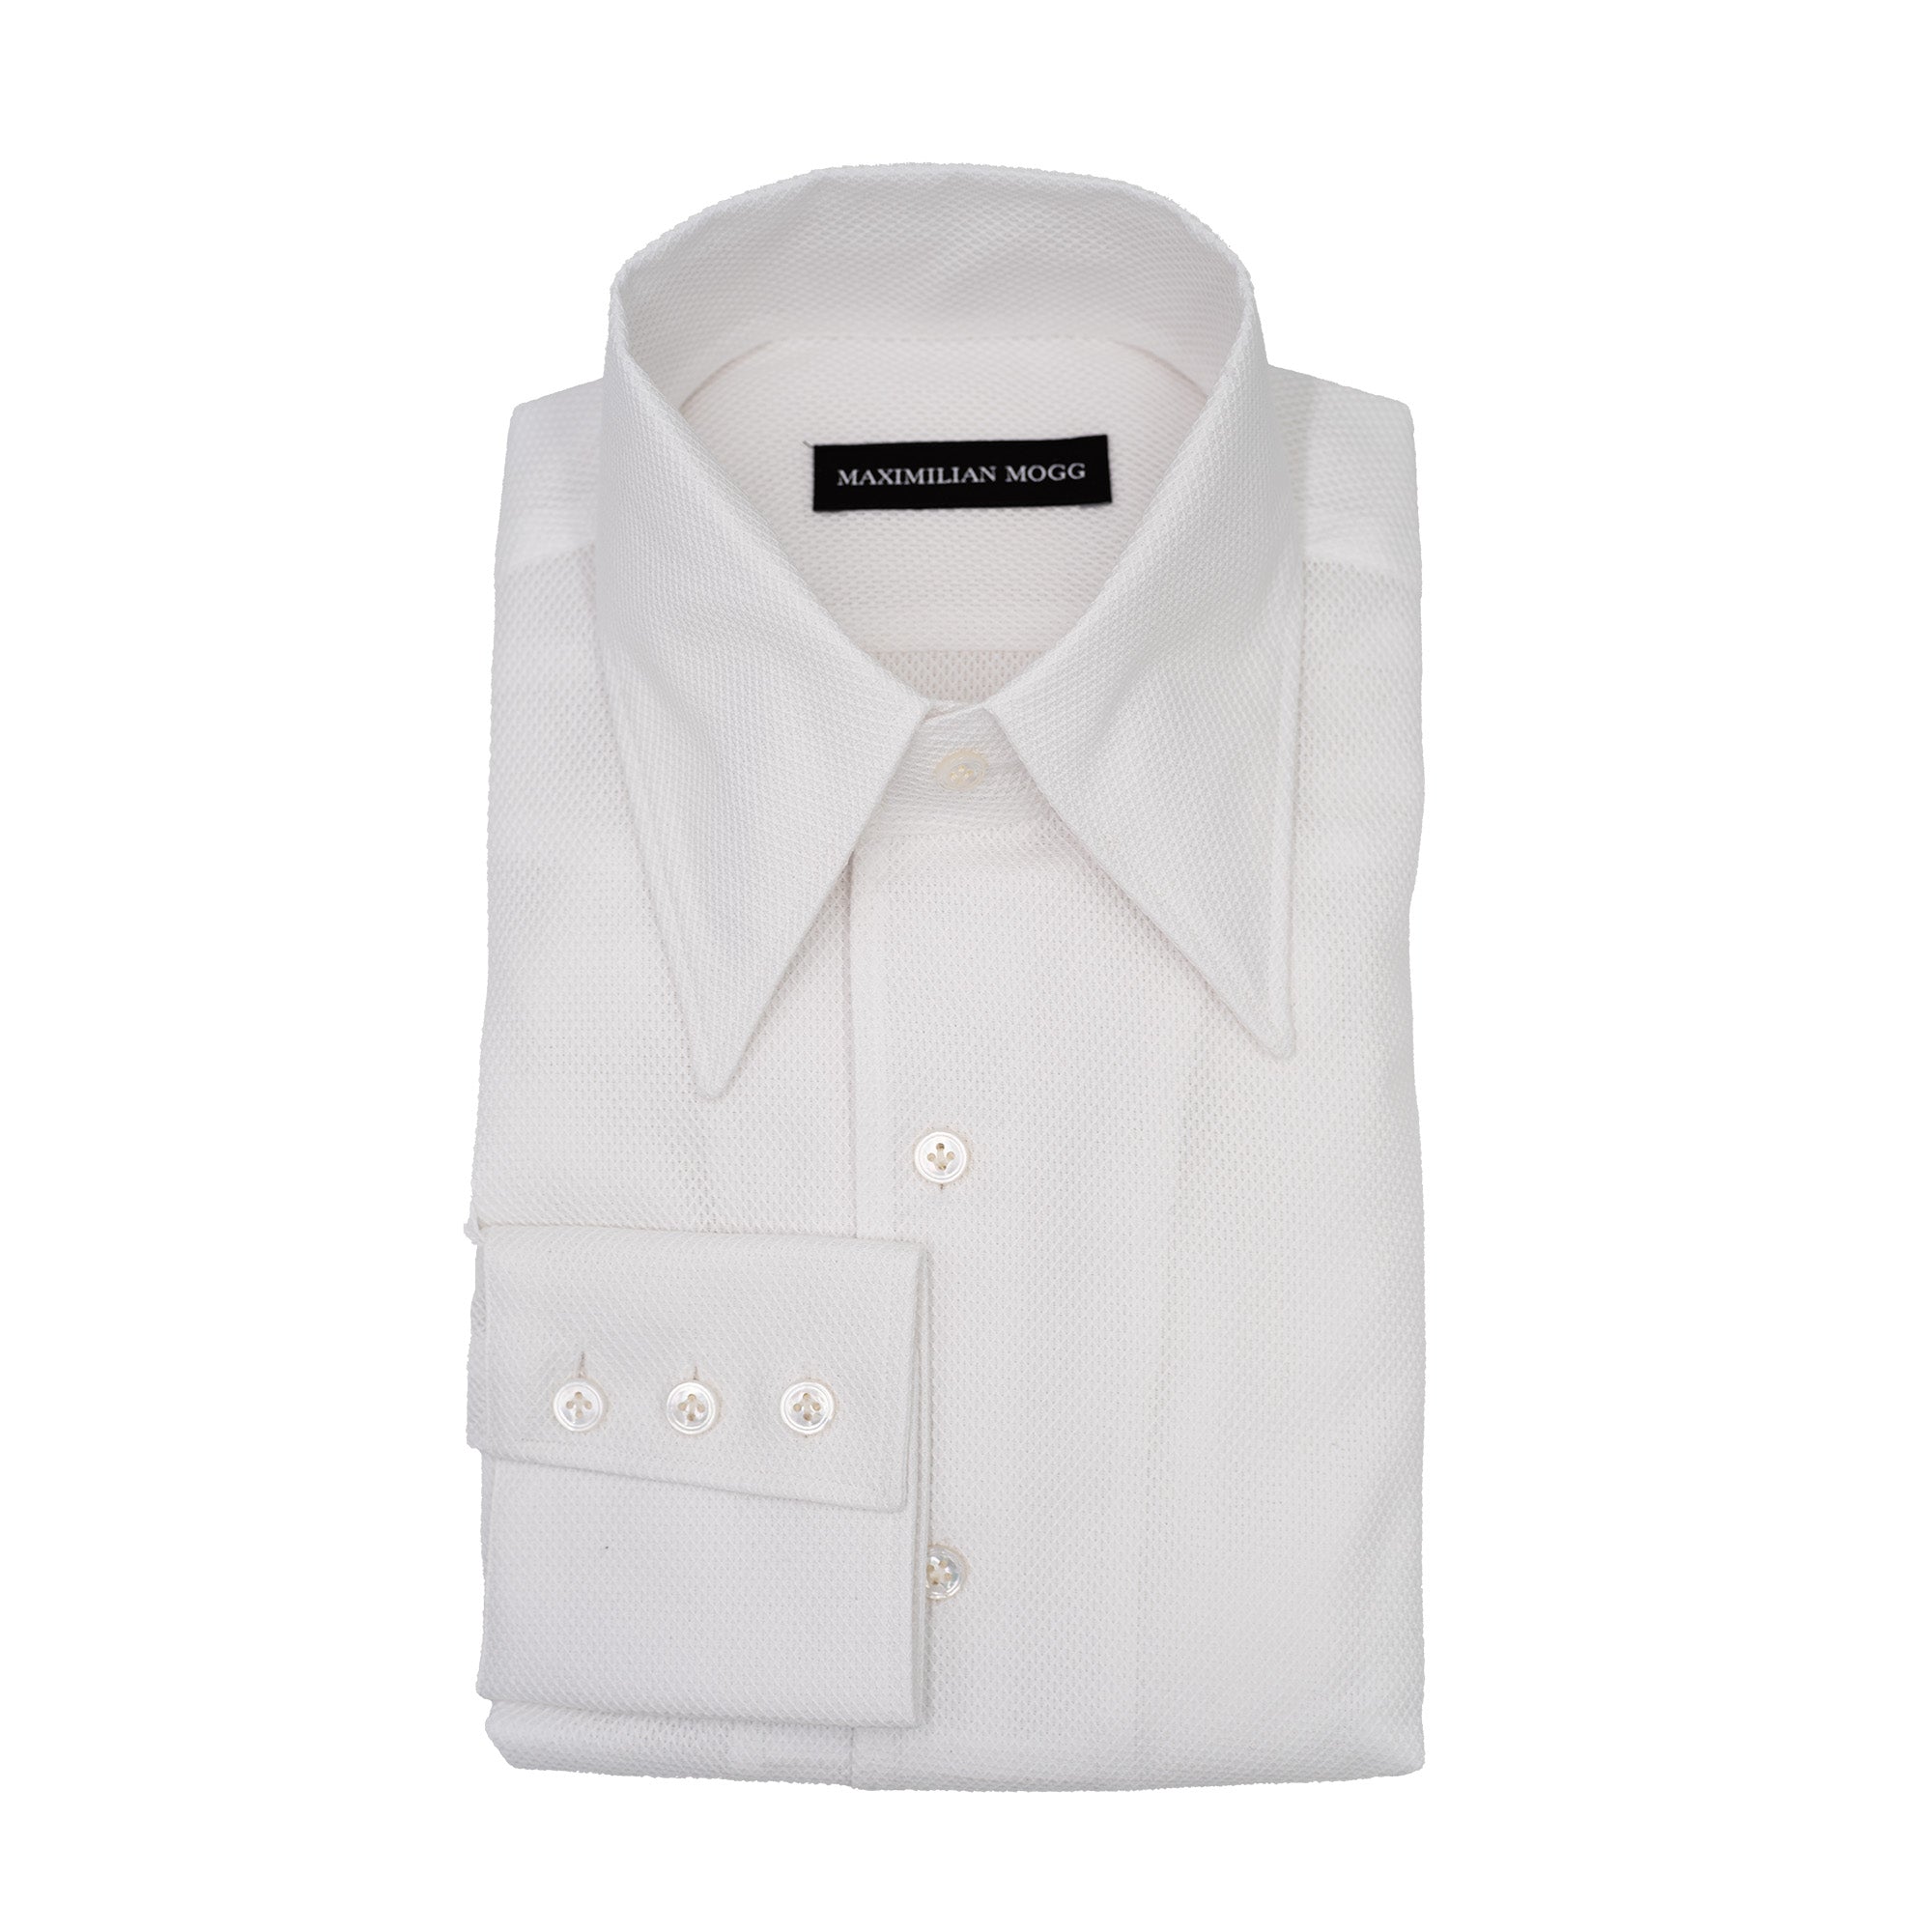 Shirt - White Giro Inglese One-Piece Collar